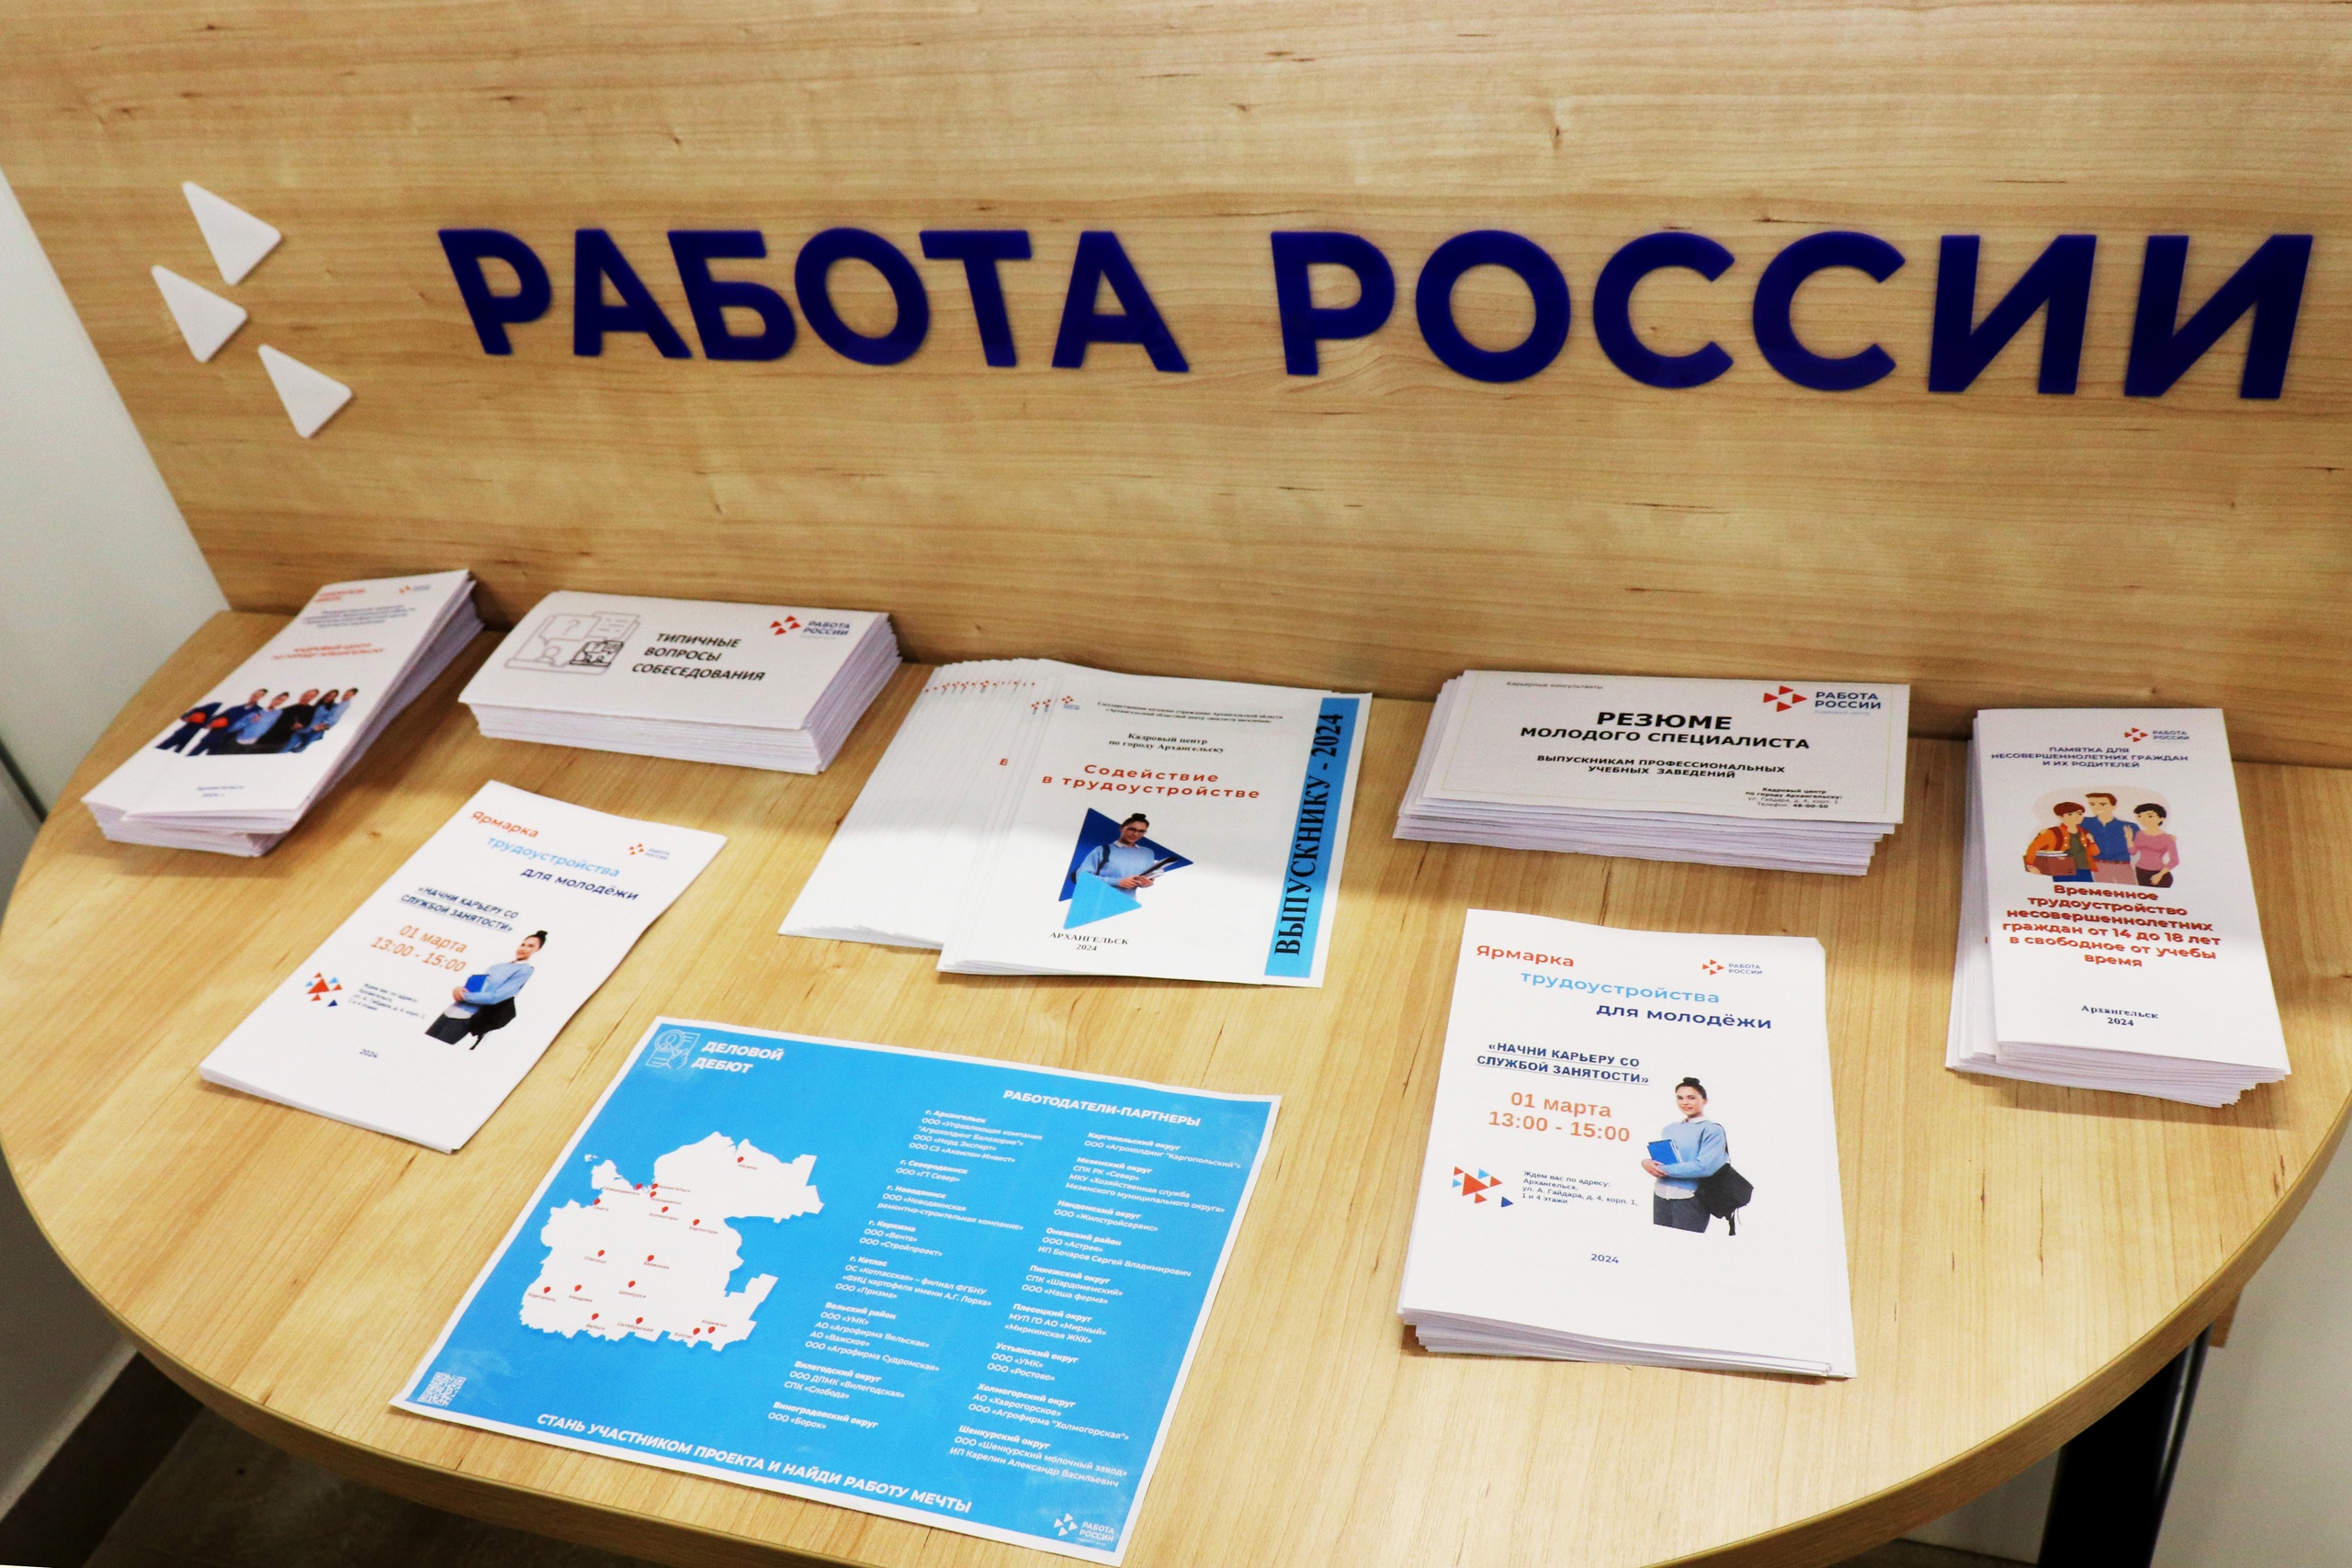 Региональный этап Всероссийской ярмарки трудоустройства «Работа России. Время возможностей» пройдет в апреле